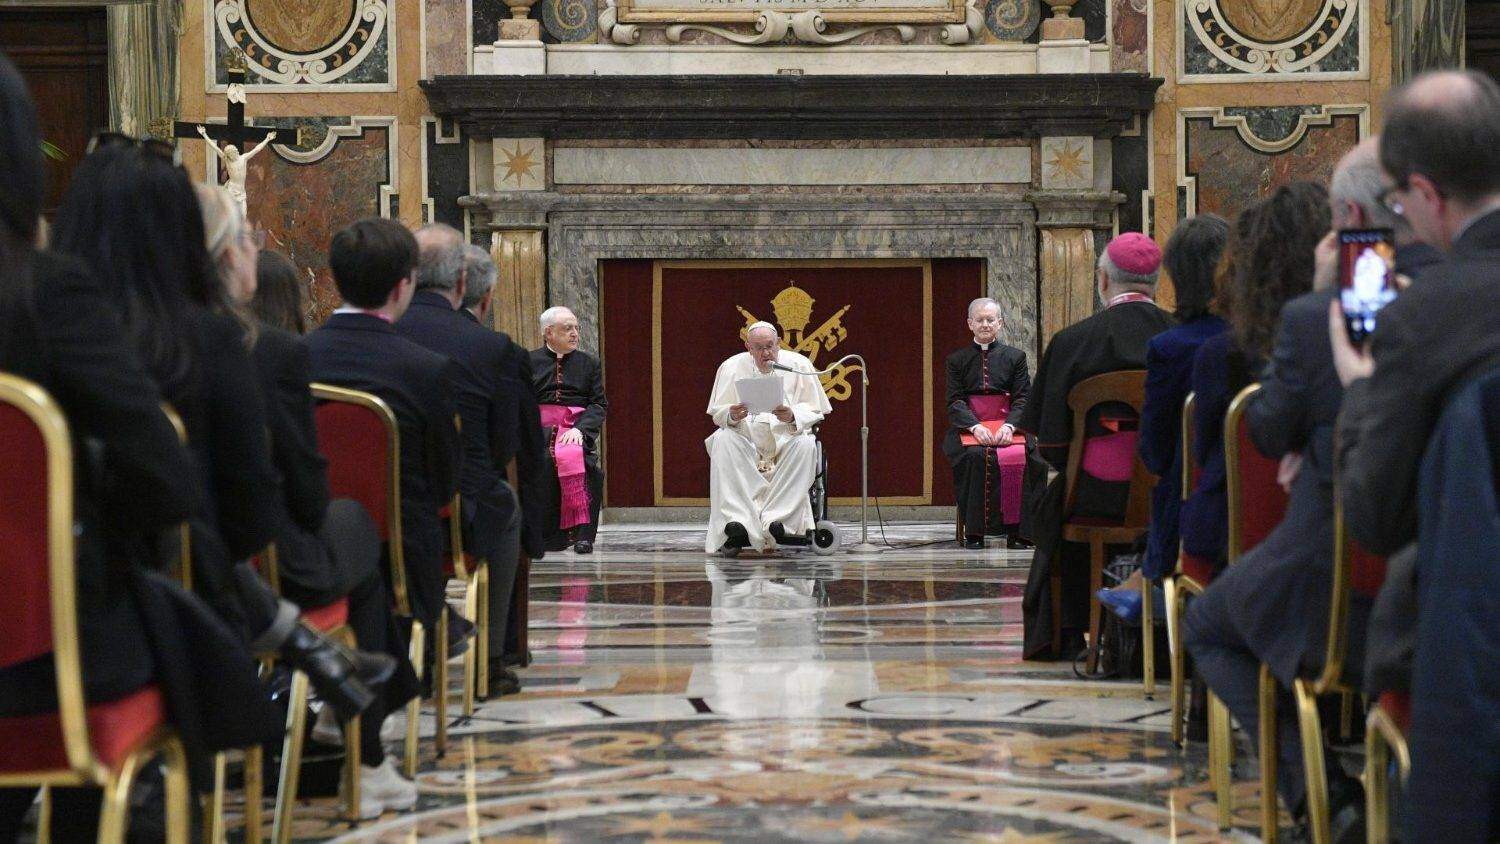 Papa na cadeira de rodas: entenda o problema de saúde que afeta o pontífice